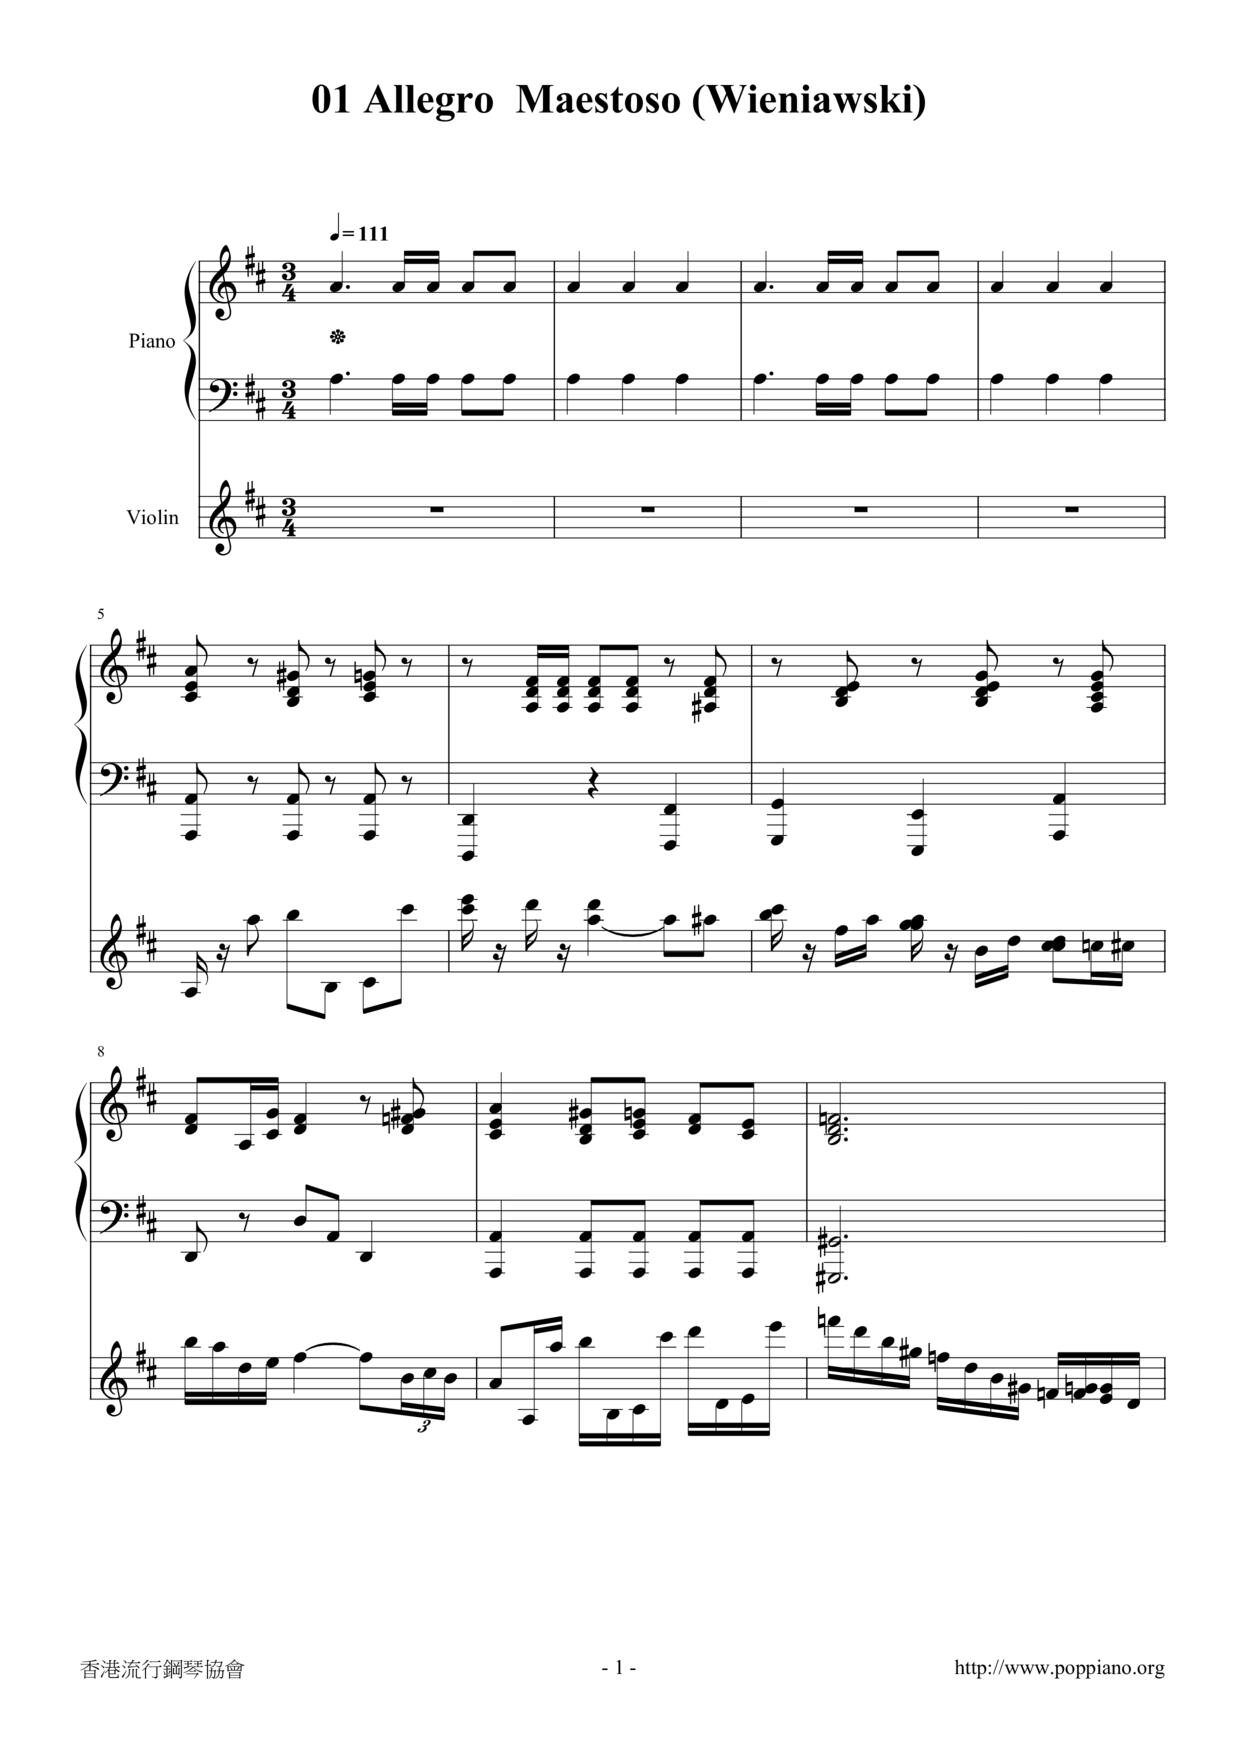 Cello Sonata in E minor, Op. 26: Allegro maestoso Score